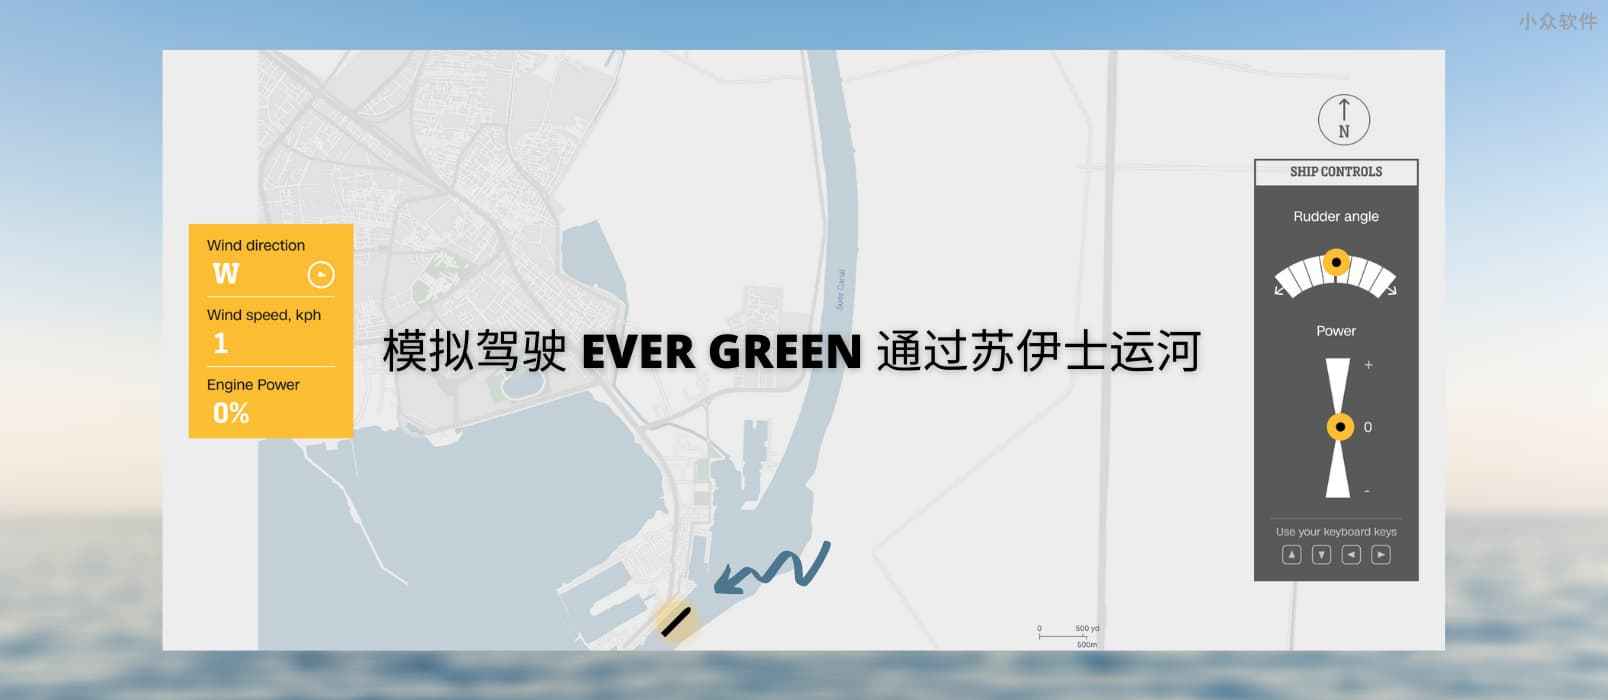 模拟驾驶 EVER GREEN 通过苏伊士运河 1